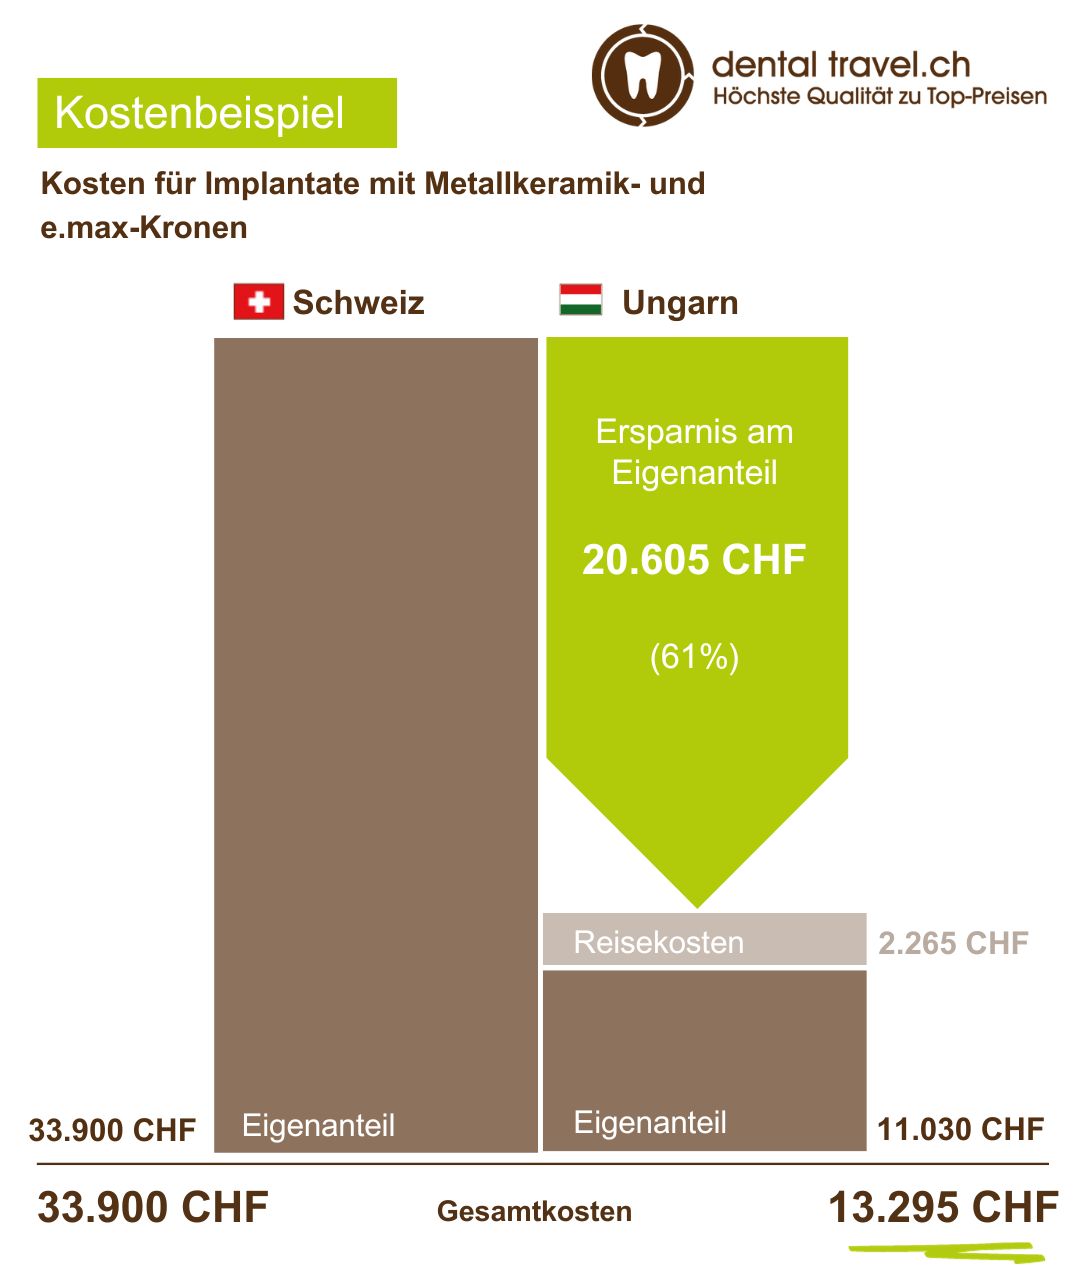 Preisvergleich für Implantate mit Metallkeramik- und e.max-Kronen, Schaubild der Kosten in Ungarn und der Schweiz